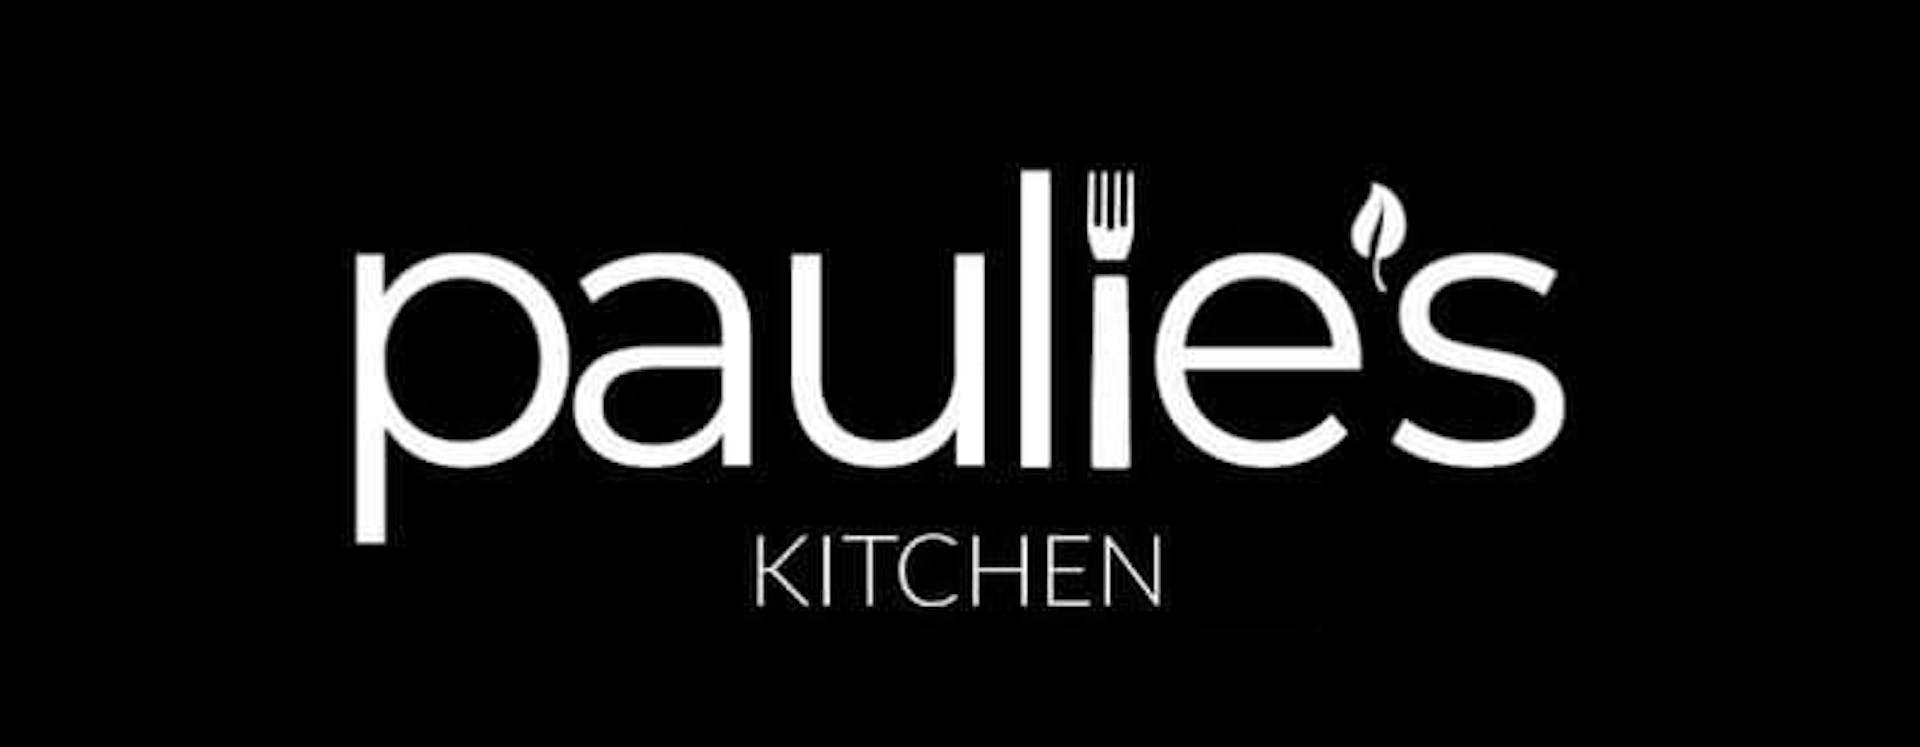 Paulie's Kitchen